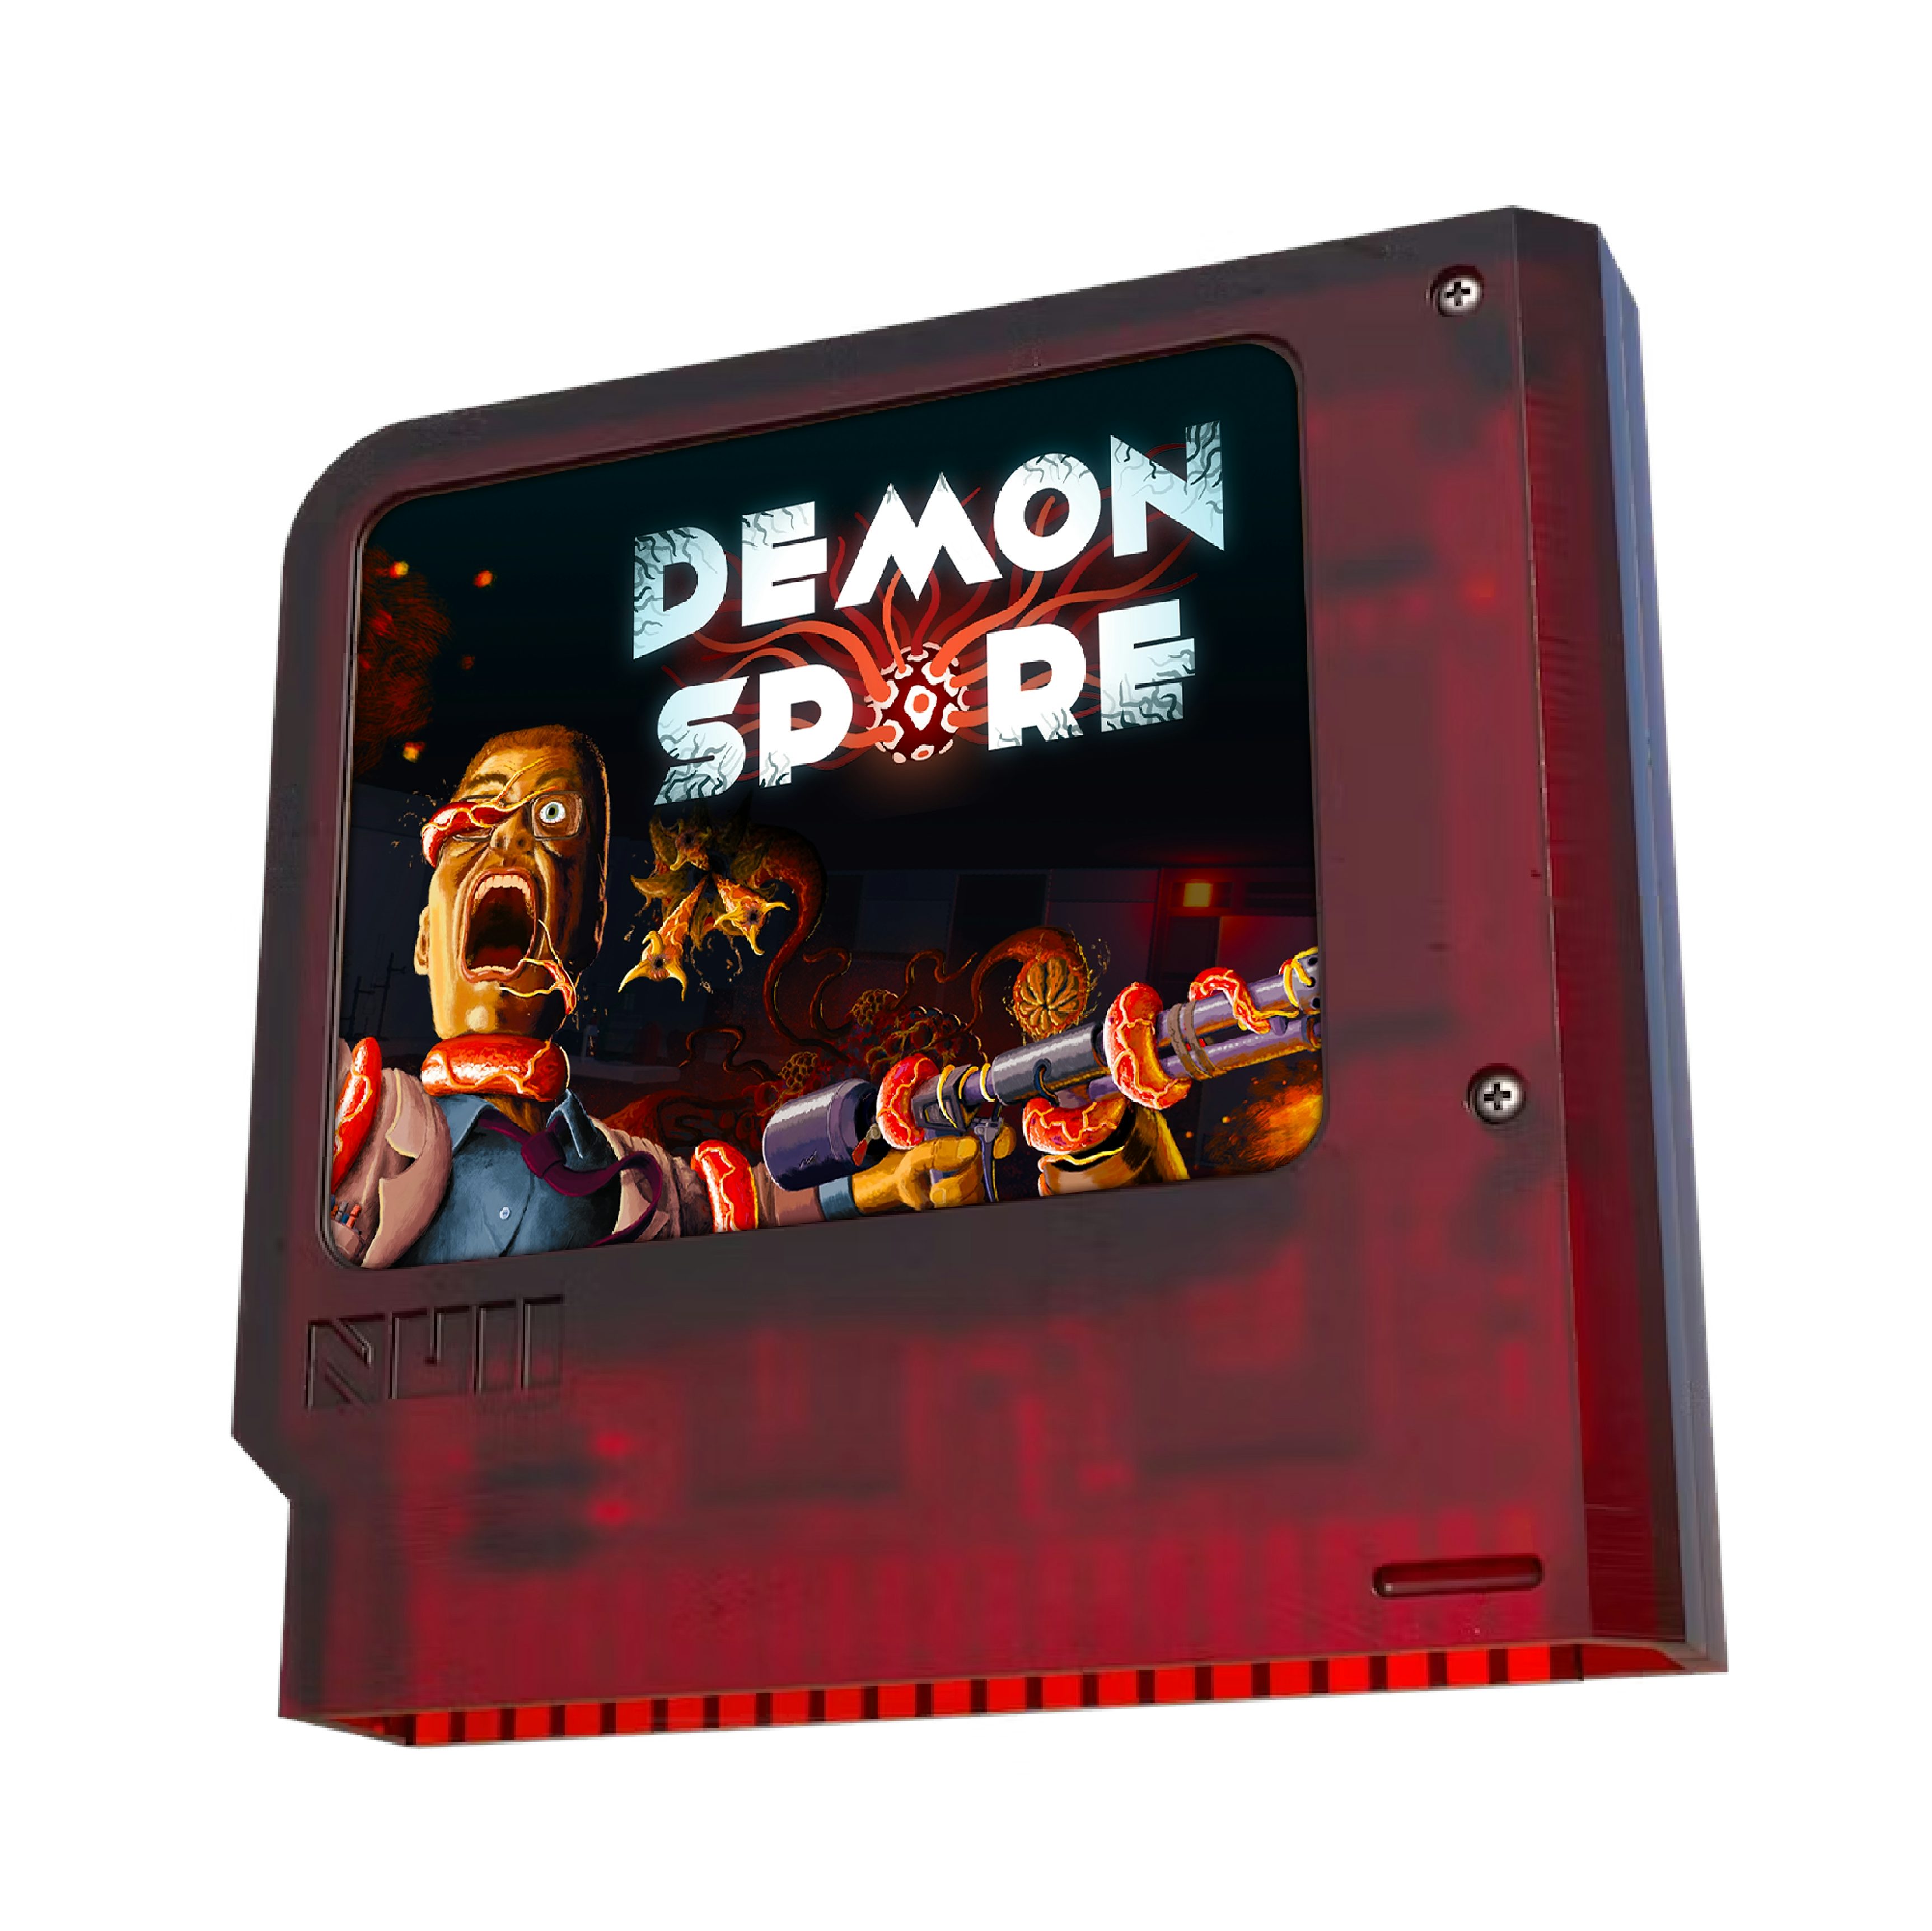 Demon Sporeimage